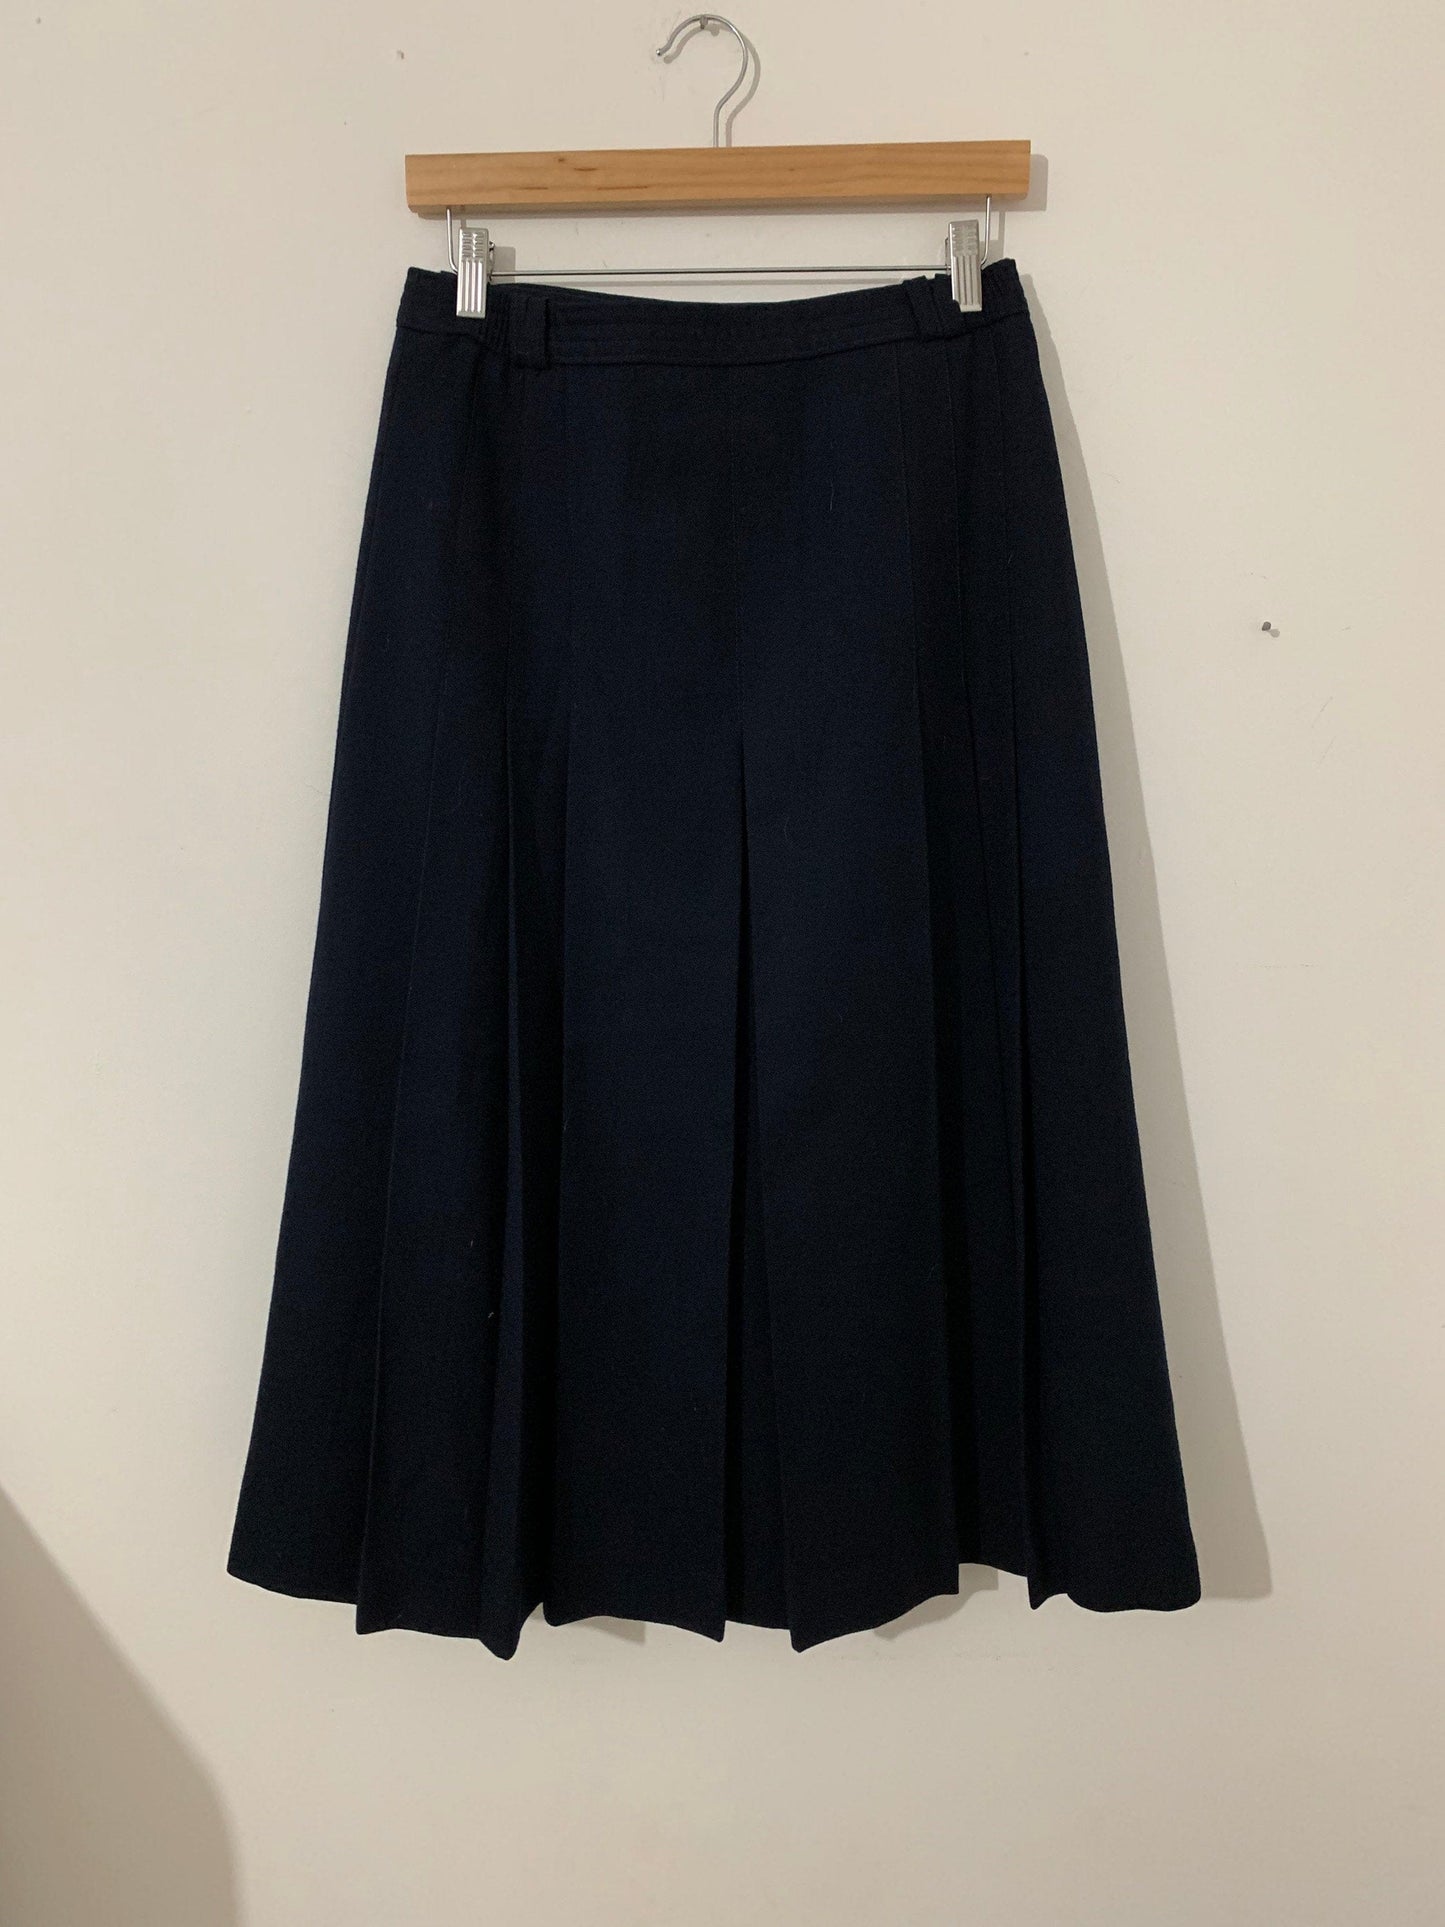 Vintage Navy Blue Pencil Skirt Knee Length  UK Size 14 - Brendella